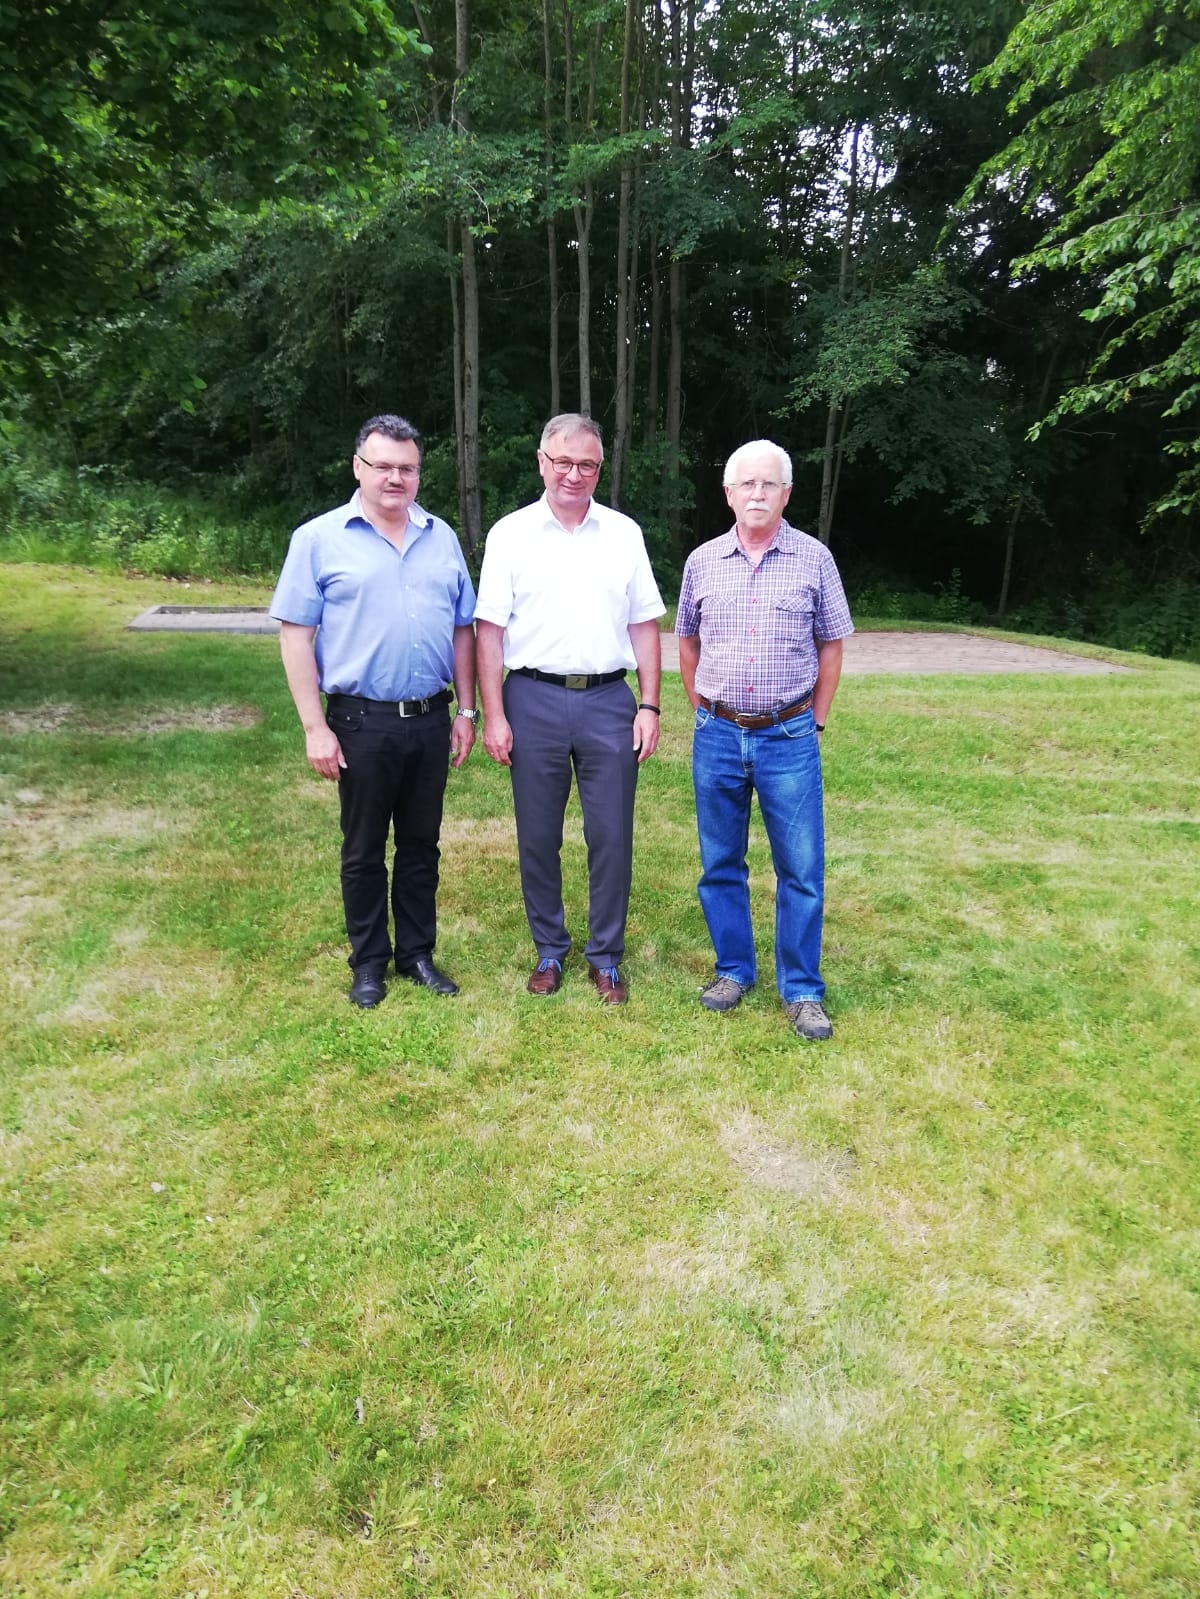 Ortsbürgermeister Thomas Kloft (mitte) mit dem Ersten Beigeordneten Meik Sanner (links) und dem Beigeordneten Roger Koch (rechts)